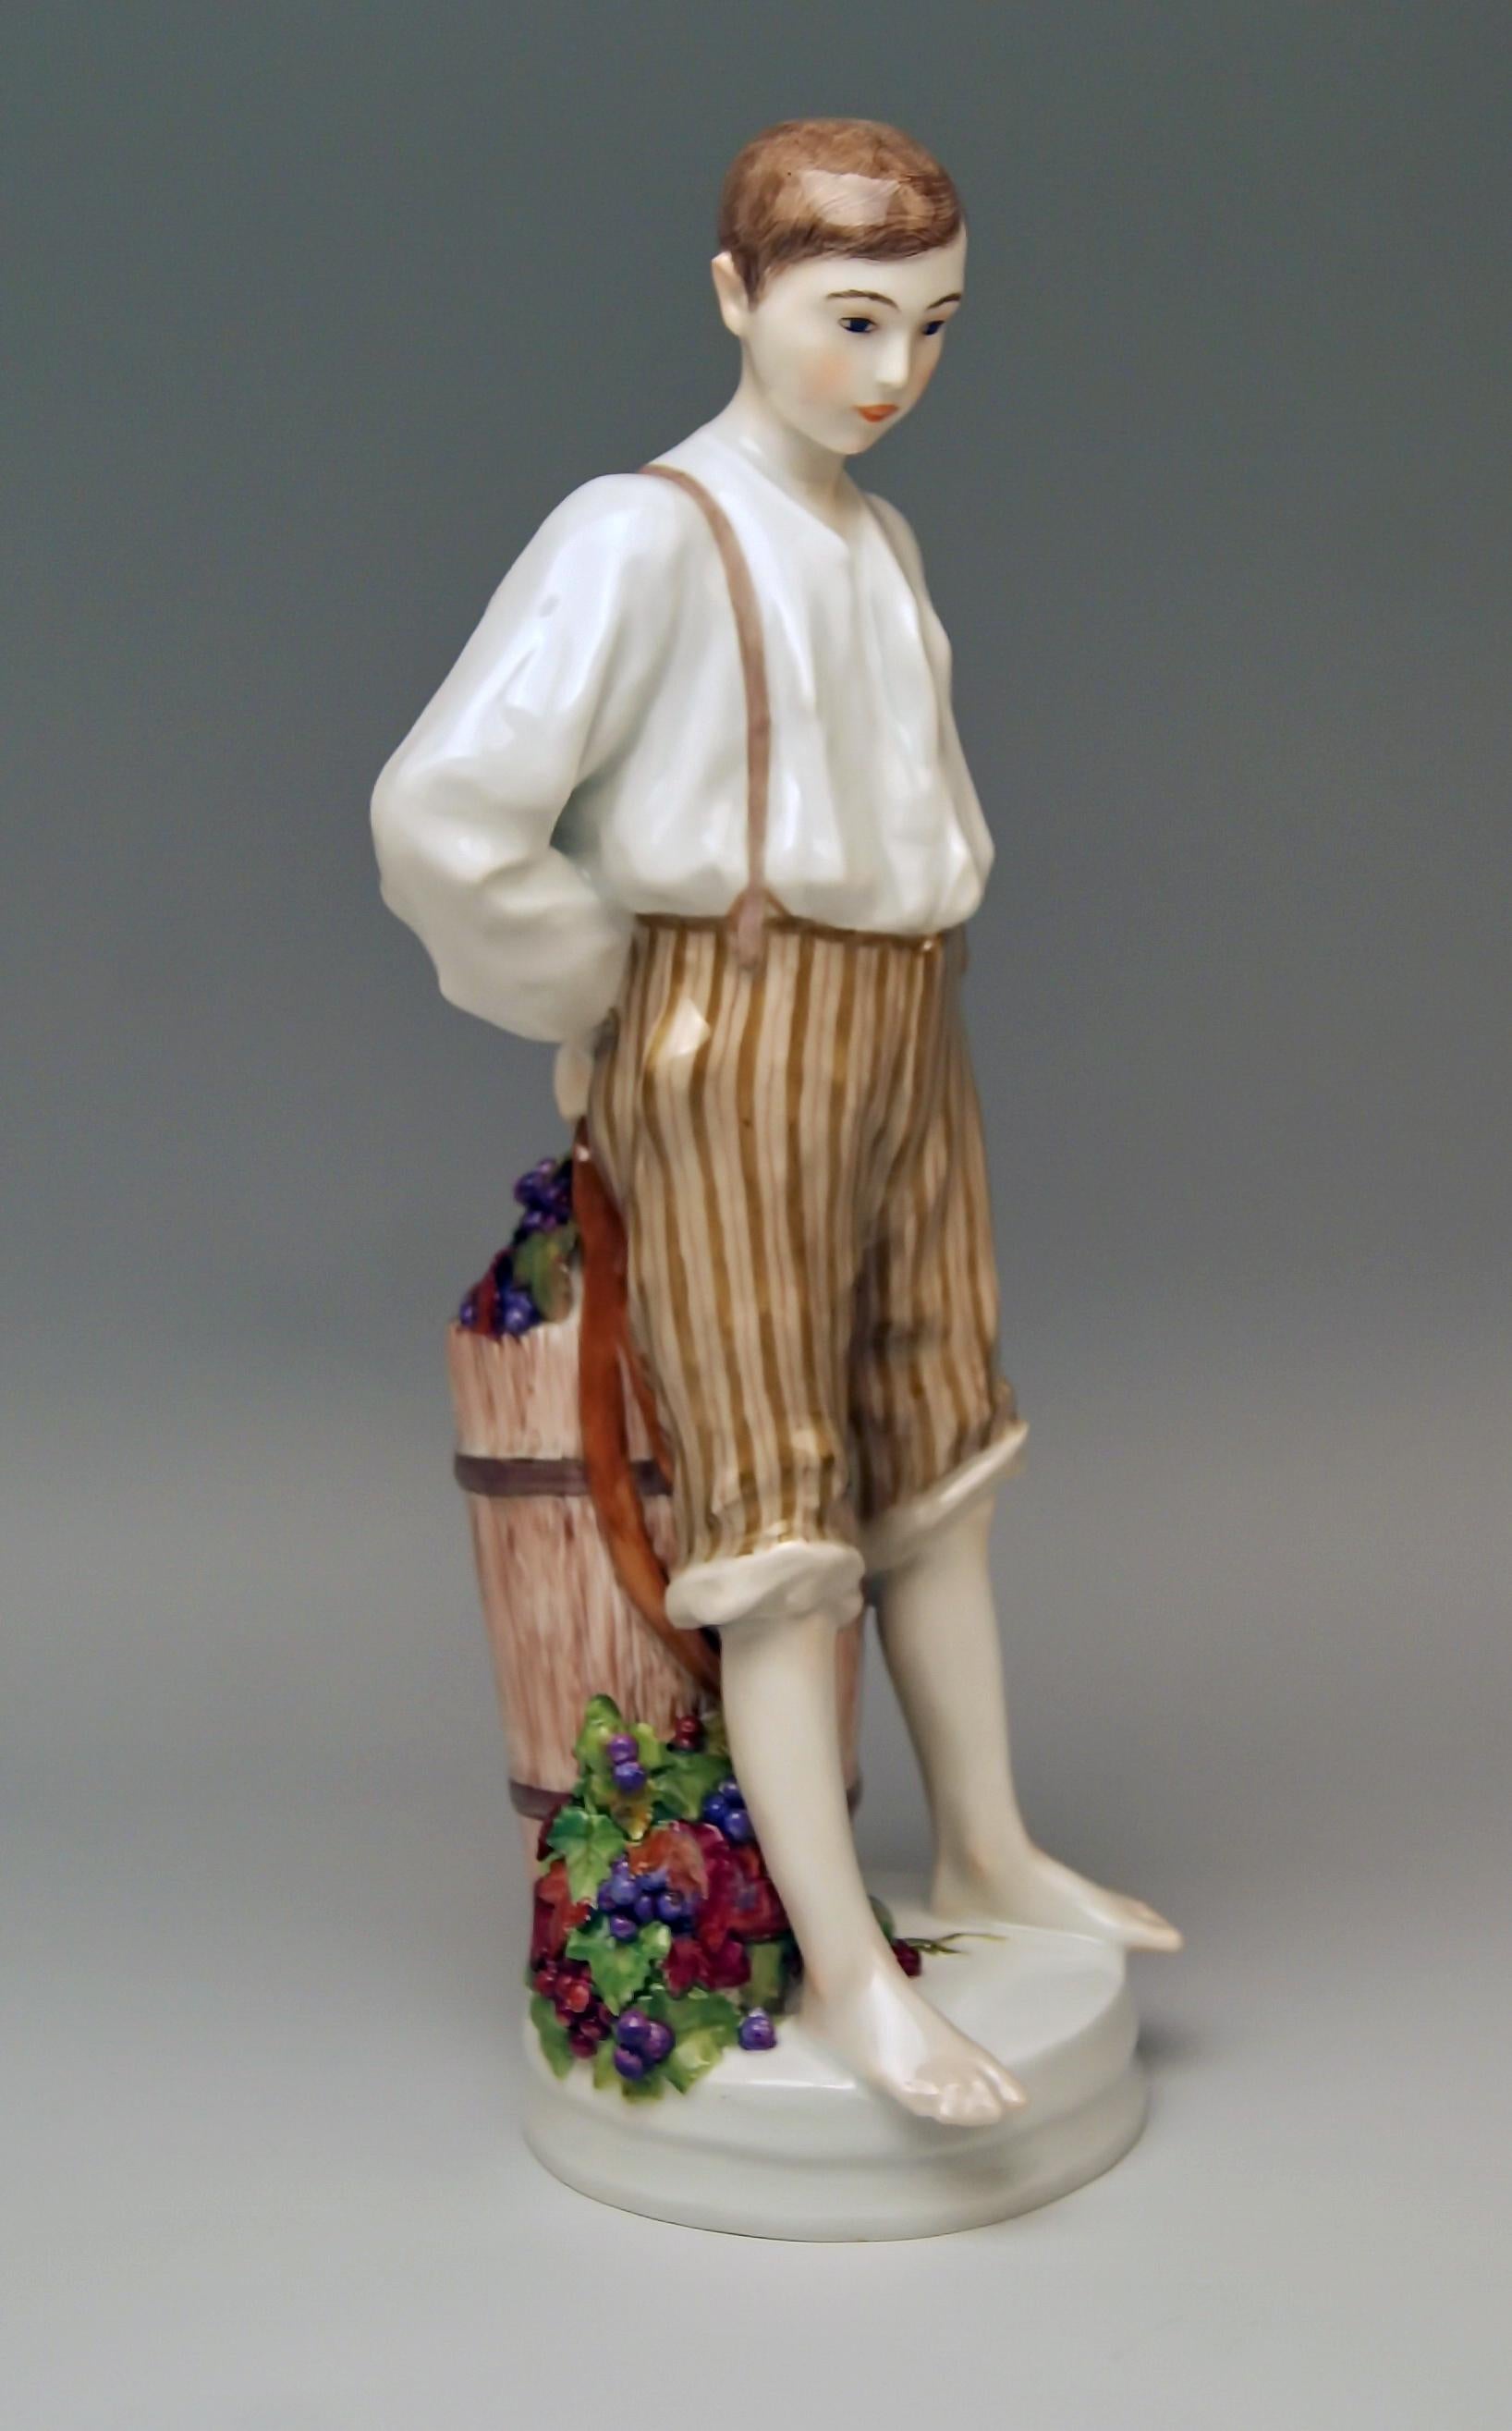 Figurine la plus rare de Meissen : Garçon avec Dosser rempli de raisins de cuve par Theodore Eichler, vers 1910.

Taille :
Hauteur 28.0 cm (= 11.02 pouces)
Diamètre 9.2 cm (= 3.62 inches)

Fabrication : Meissen
Poinçonné : Marque bleue de